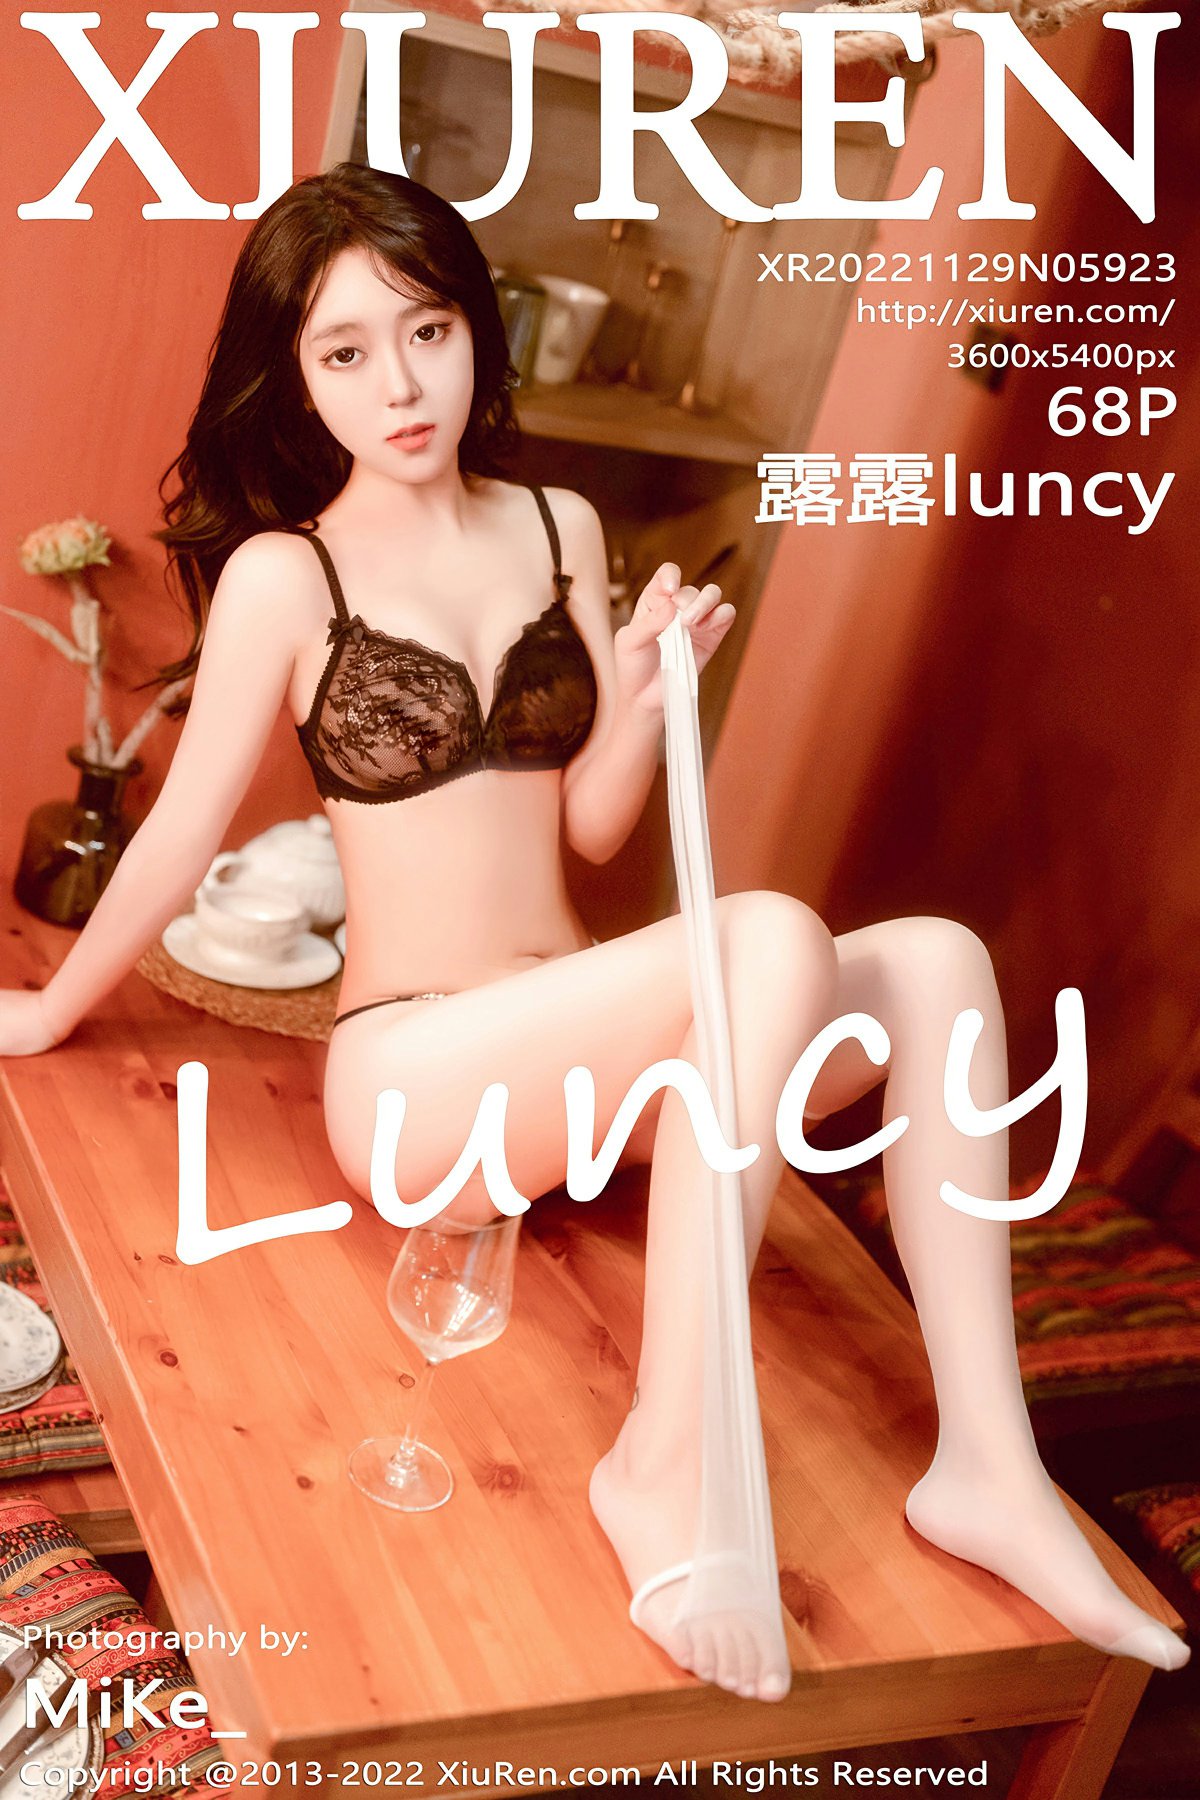 [XiuRen秀人网] No.5923 露露luncy1 